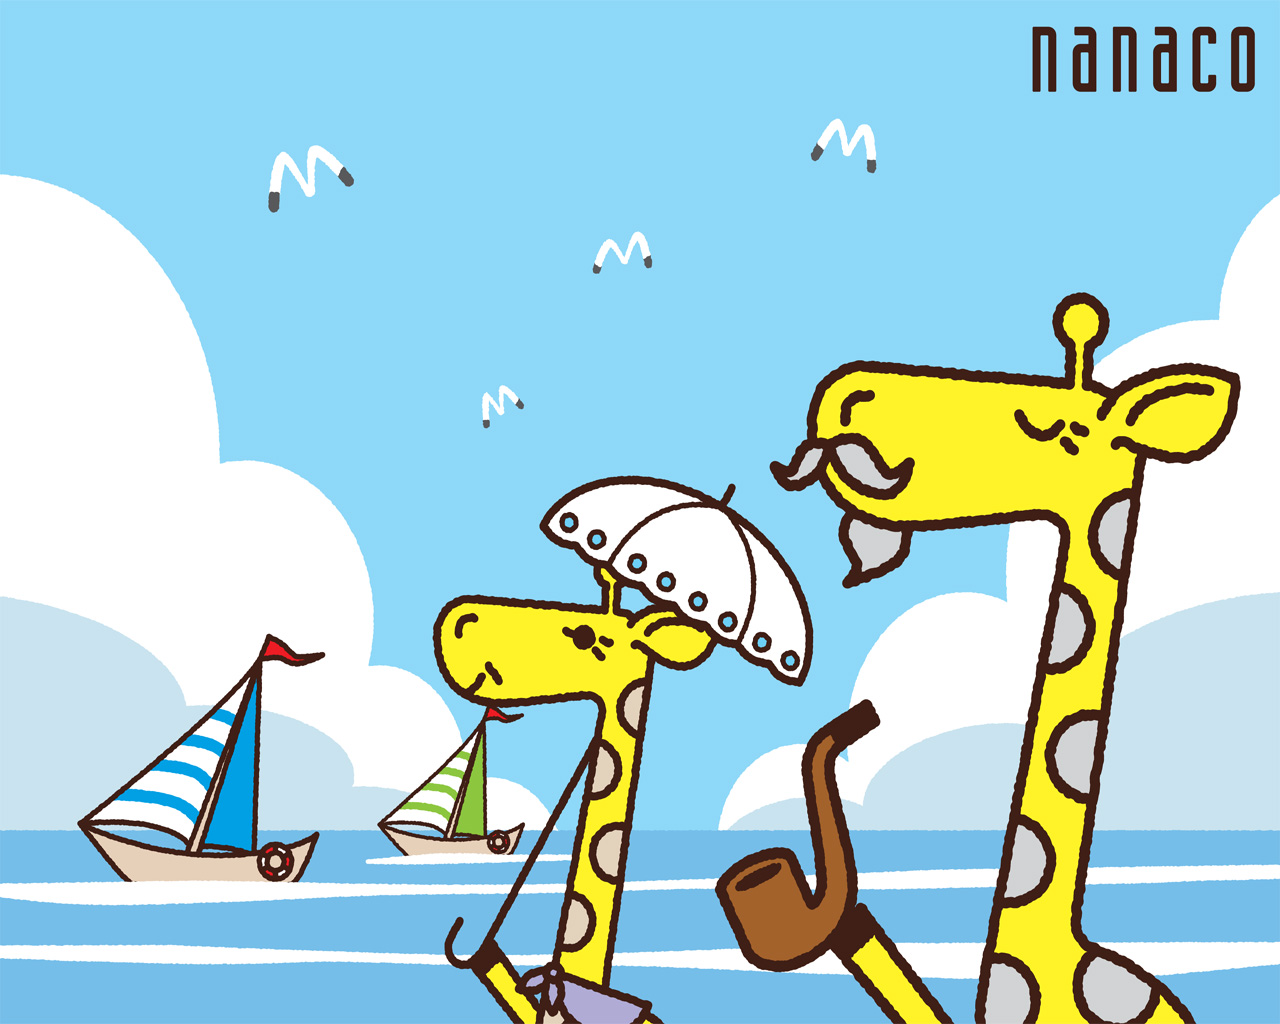 電子マネー Nanaco 公式サイト Nanacoお楽しみコンテンツ ナナコ壁紙ダウンロード